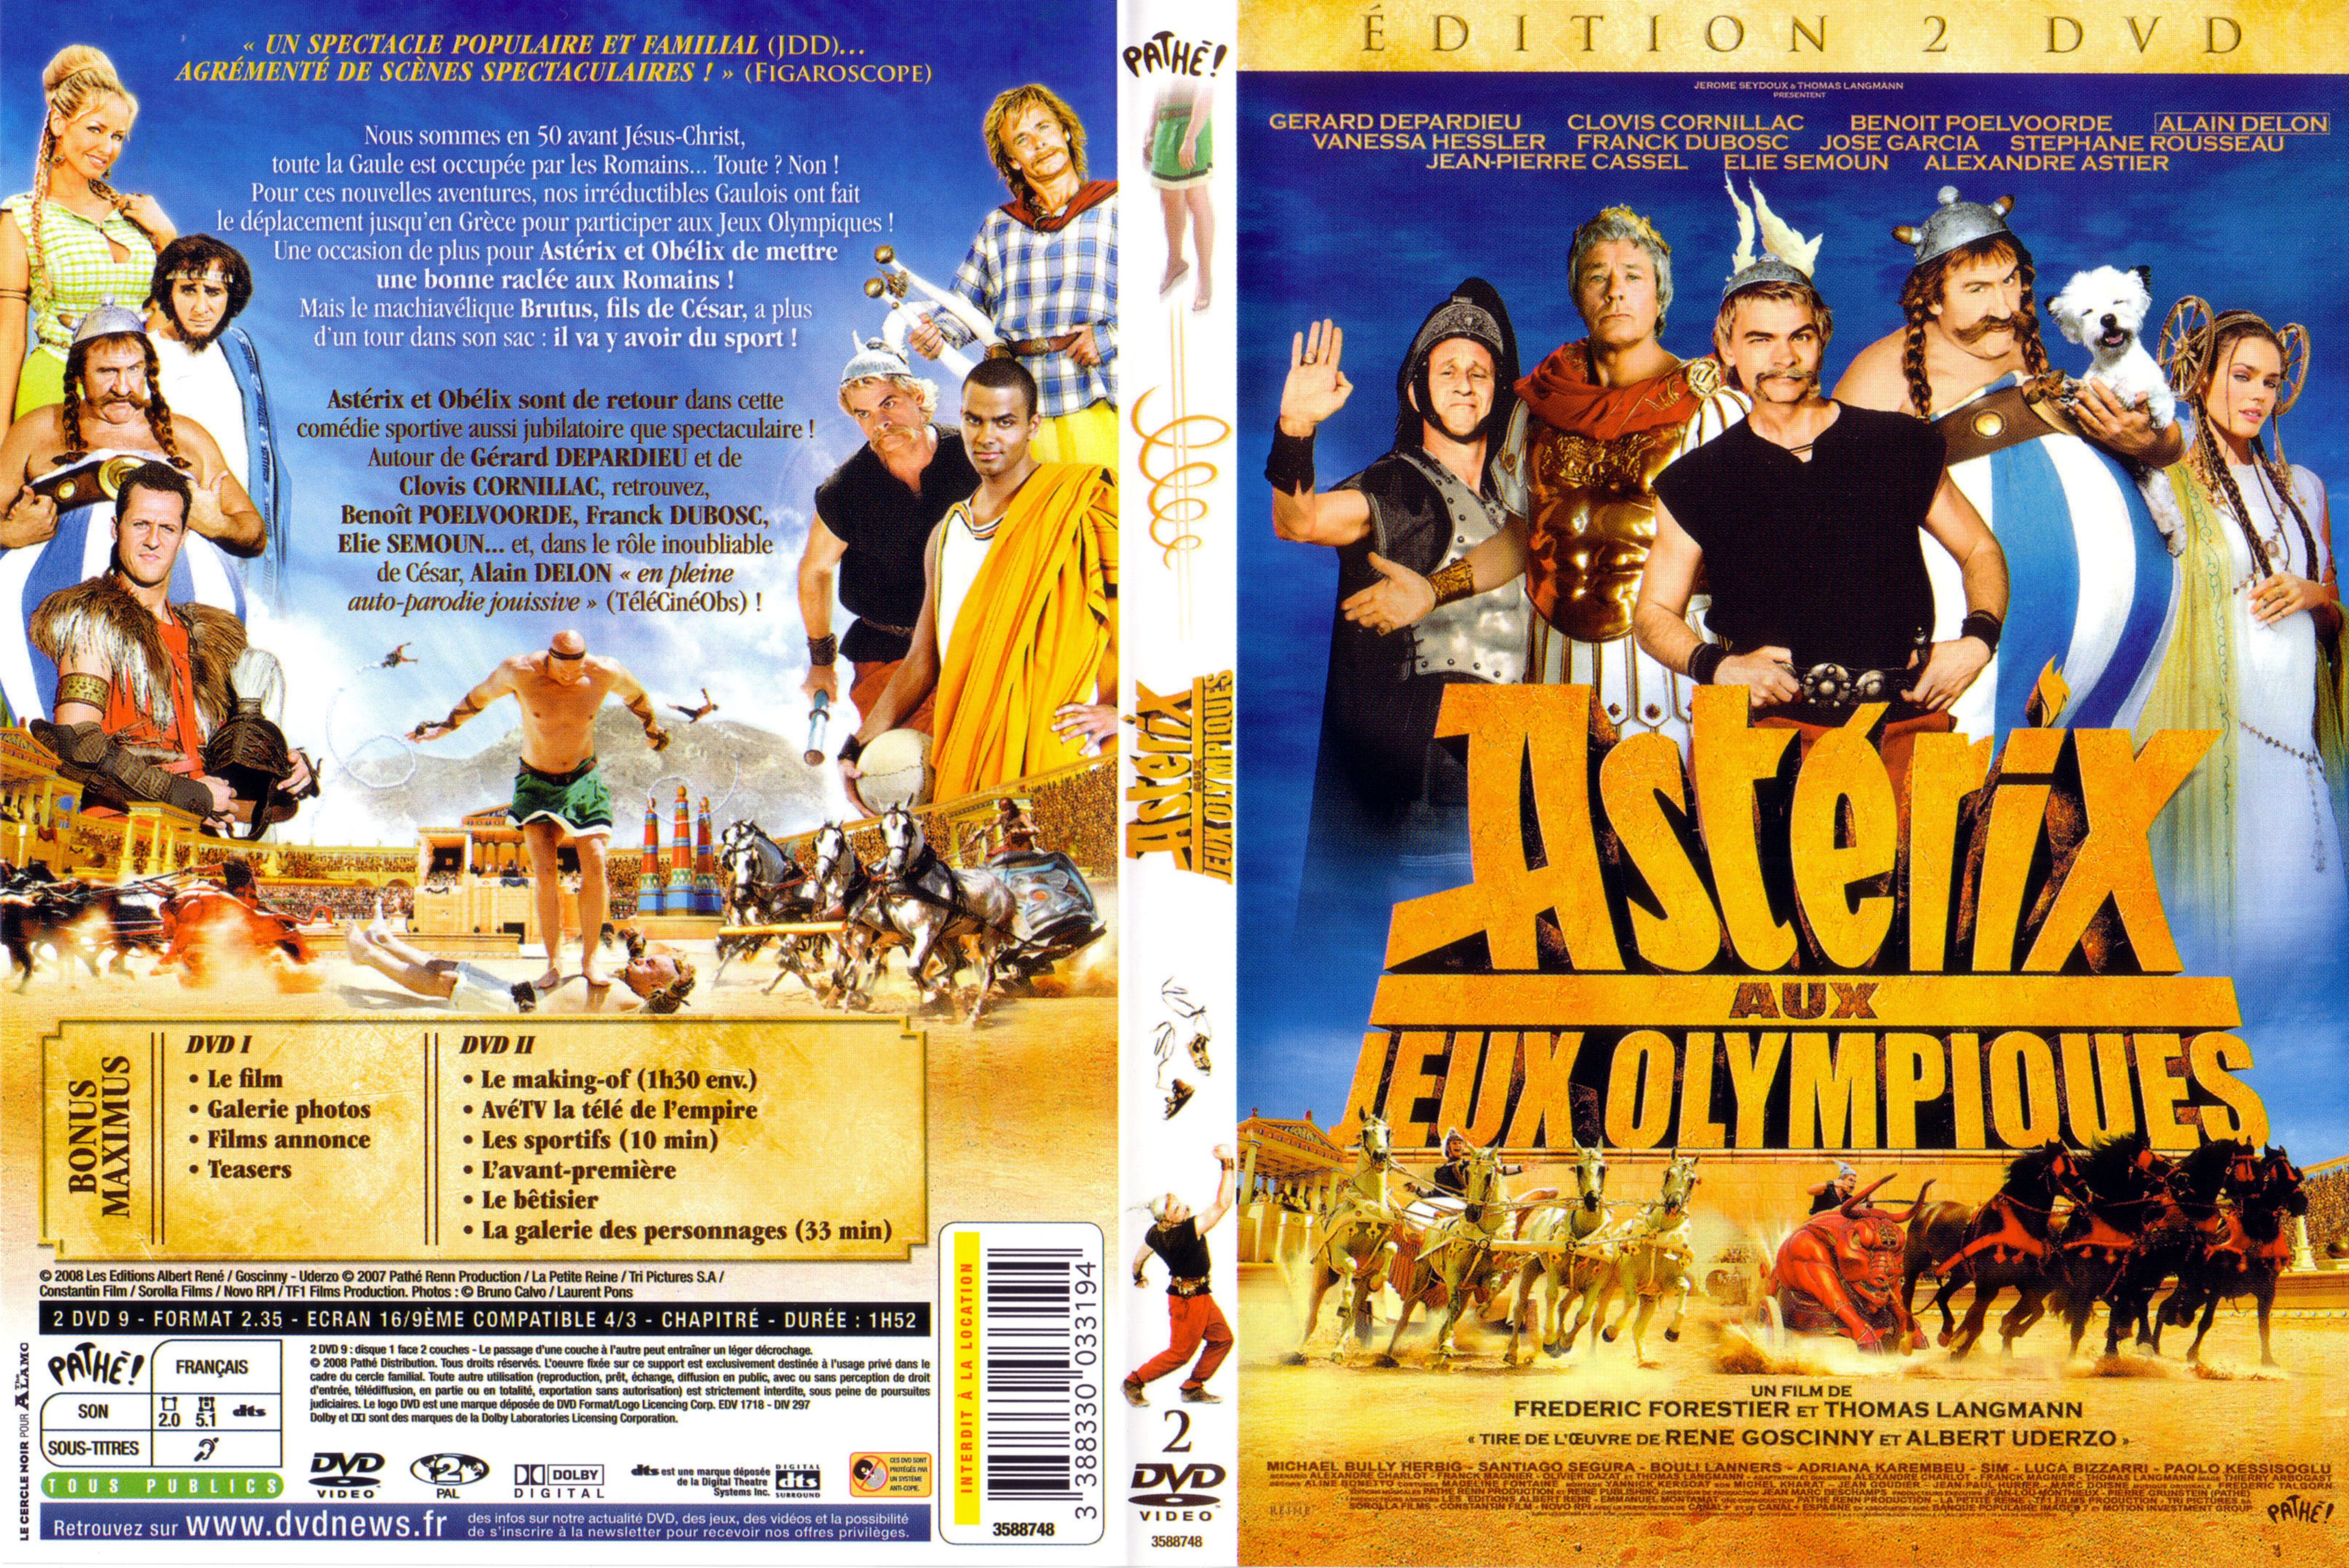 Jaquette DVD Asterix aux Jeux Olympiques